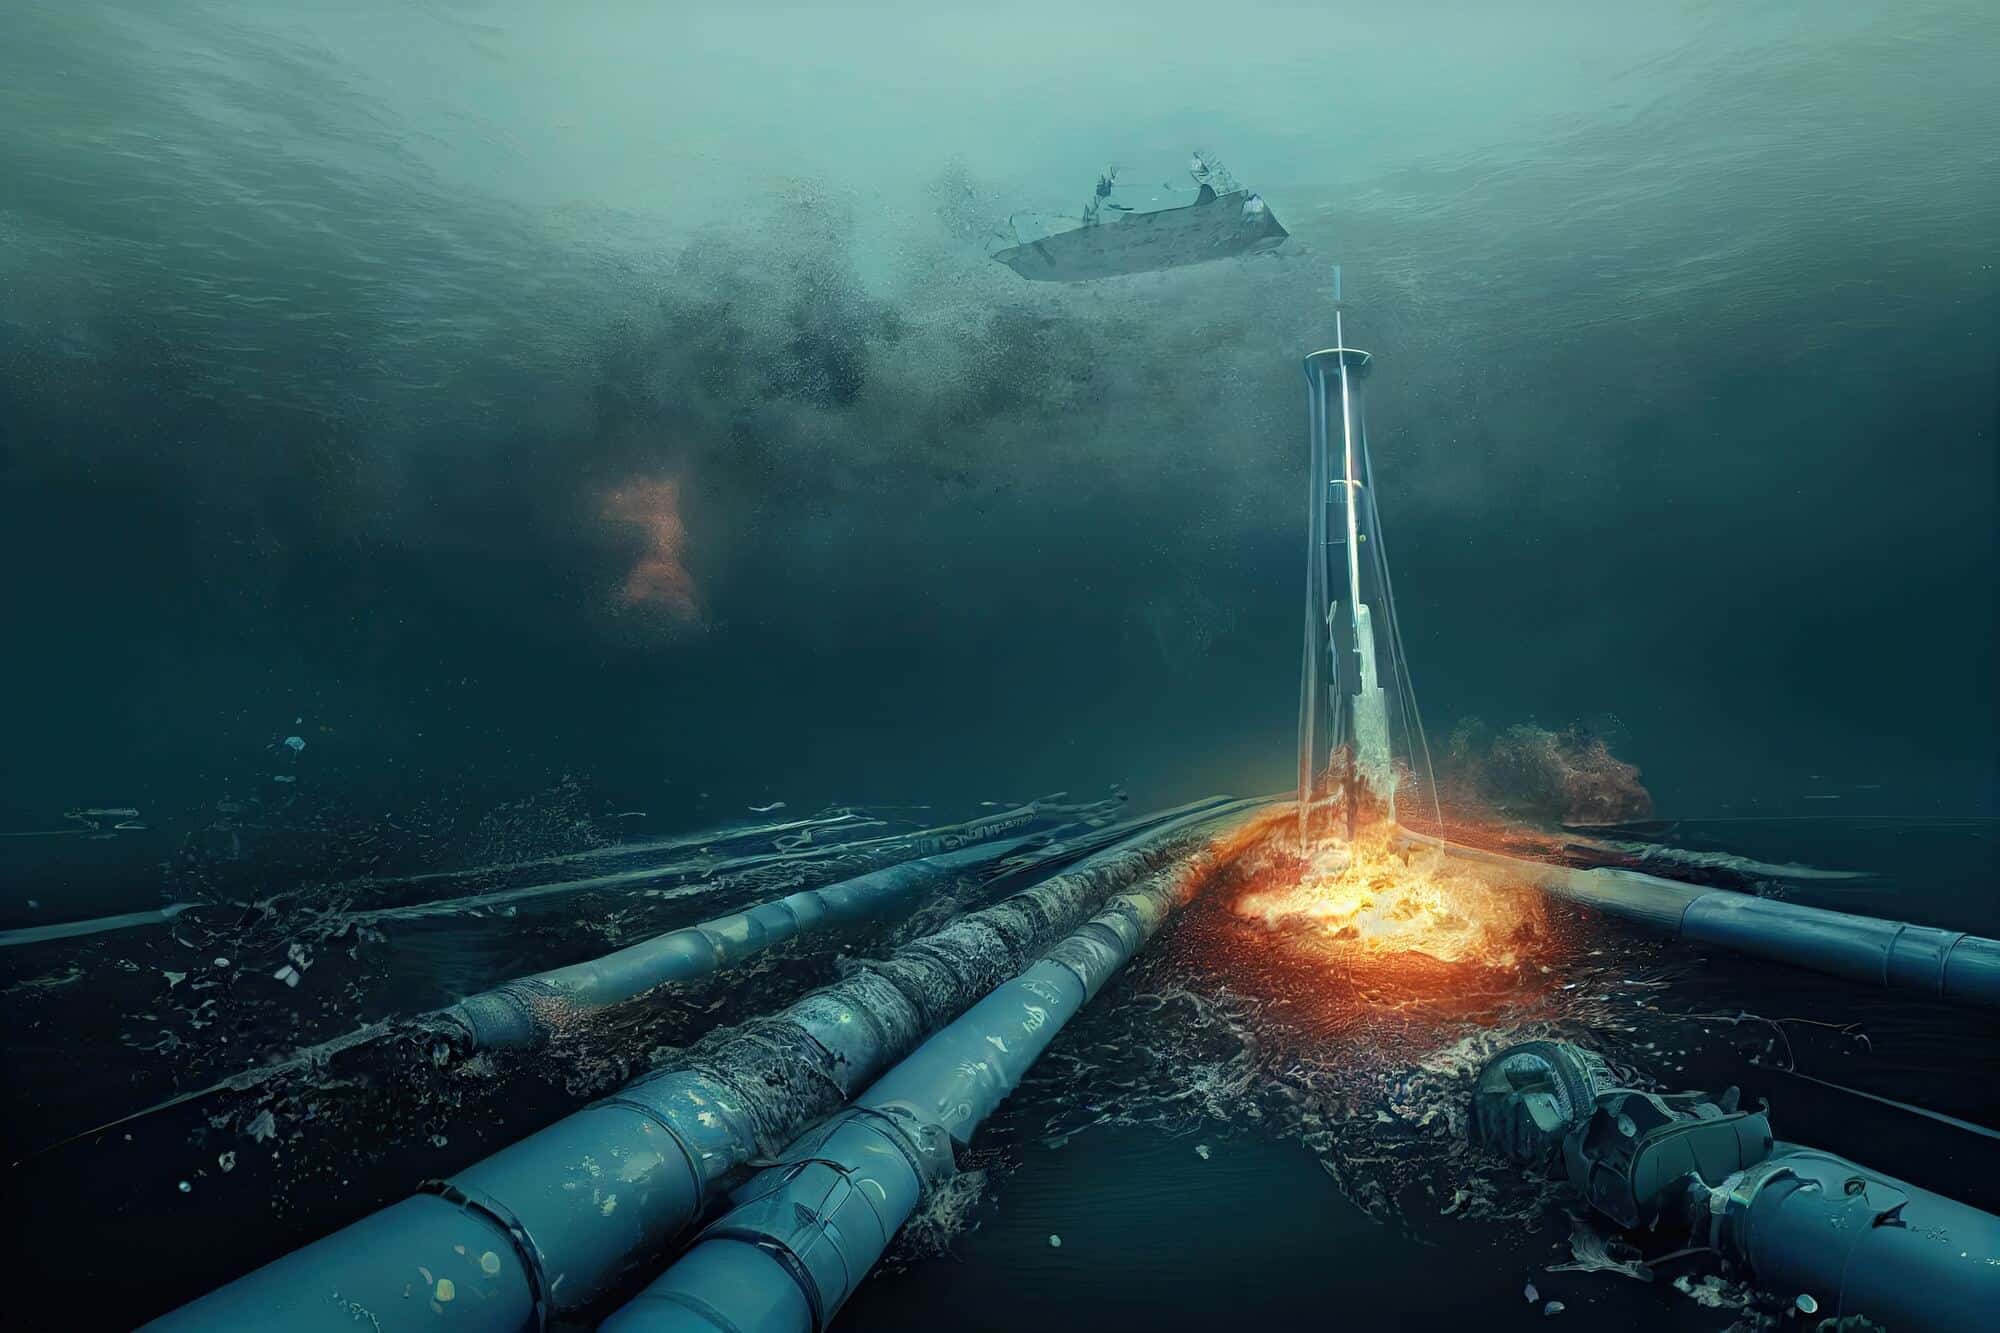 הדמיה של פיצוץ צינור גז תת מימי בדומה לצינור הגז הרוסי שפוצץ על ידי הרוסים כדי למנוע גז מאירופה בעת הפלישה שלה לאוקראינה. <a href="https://depositphotos.com. ">המחשה: depositphotos.com</a>